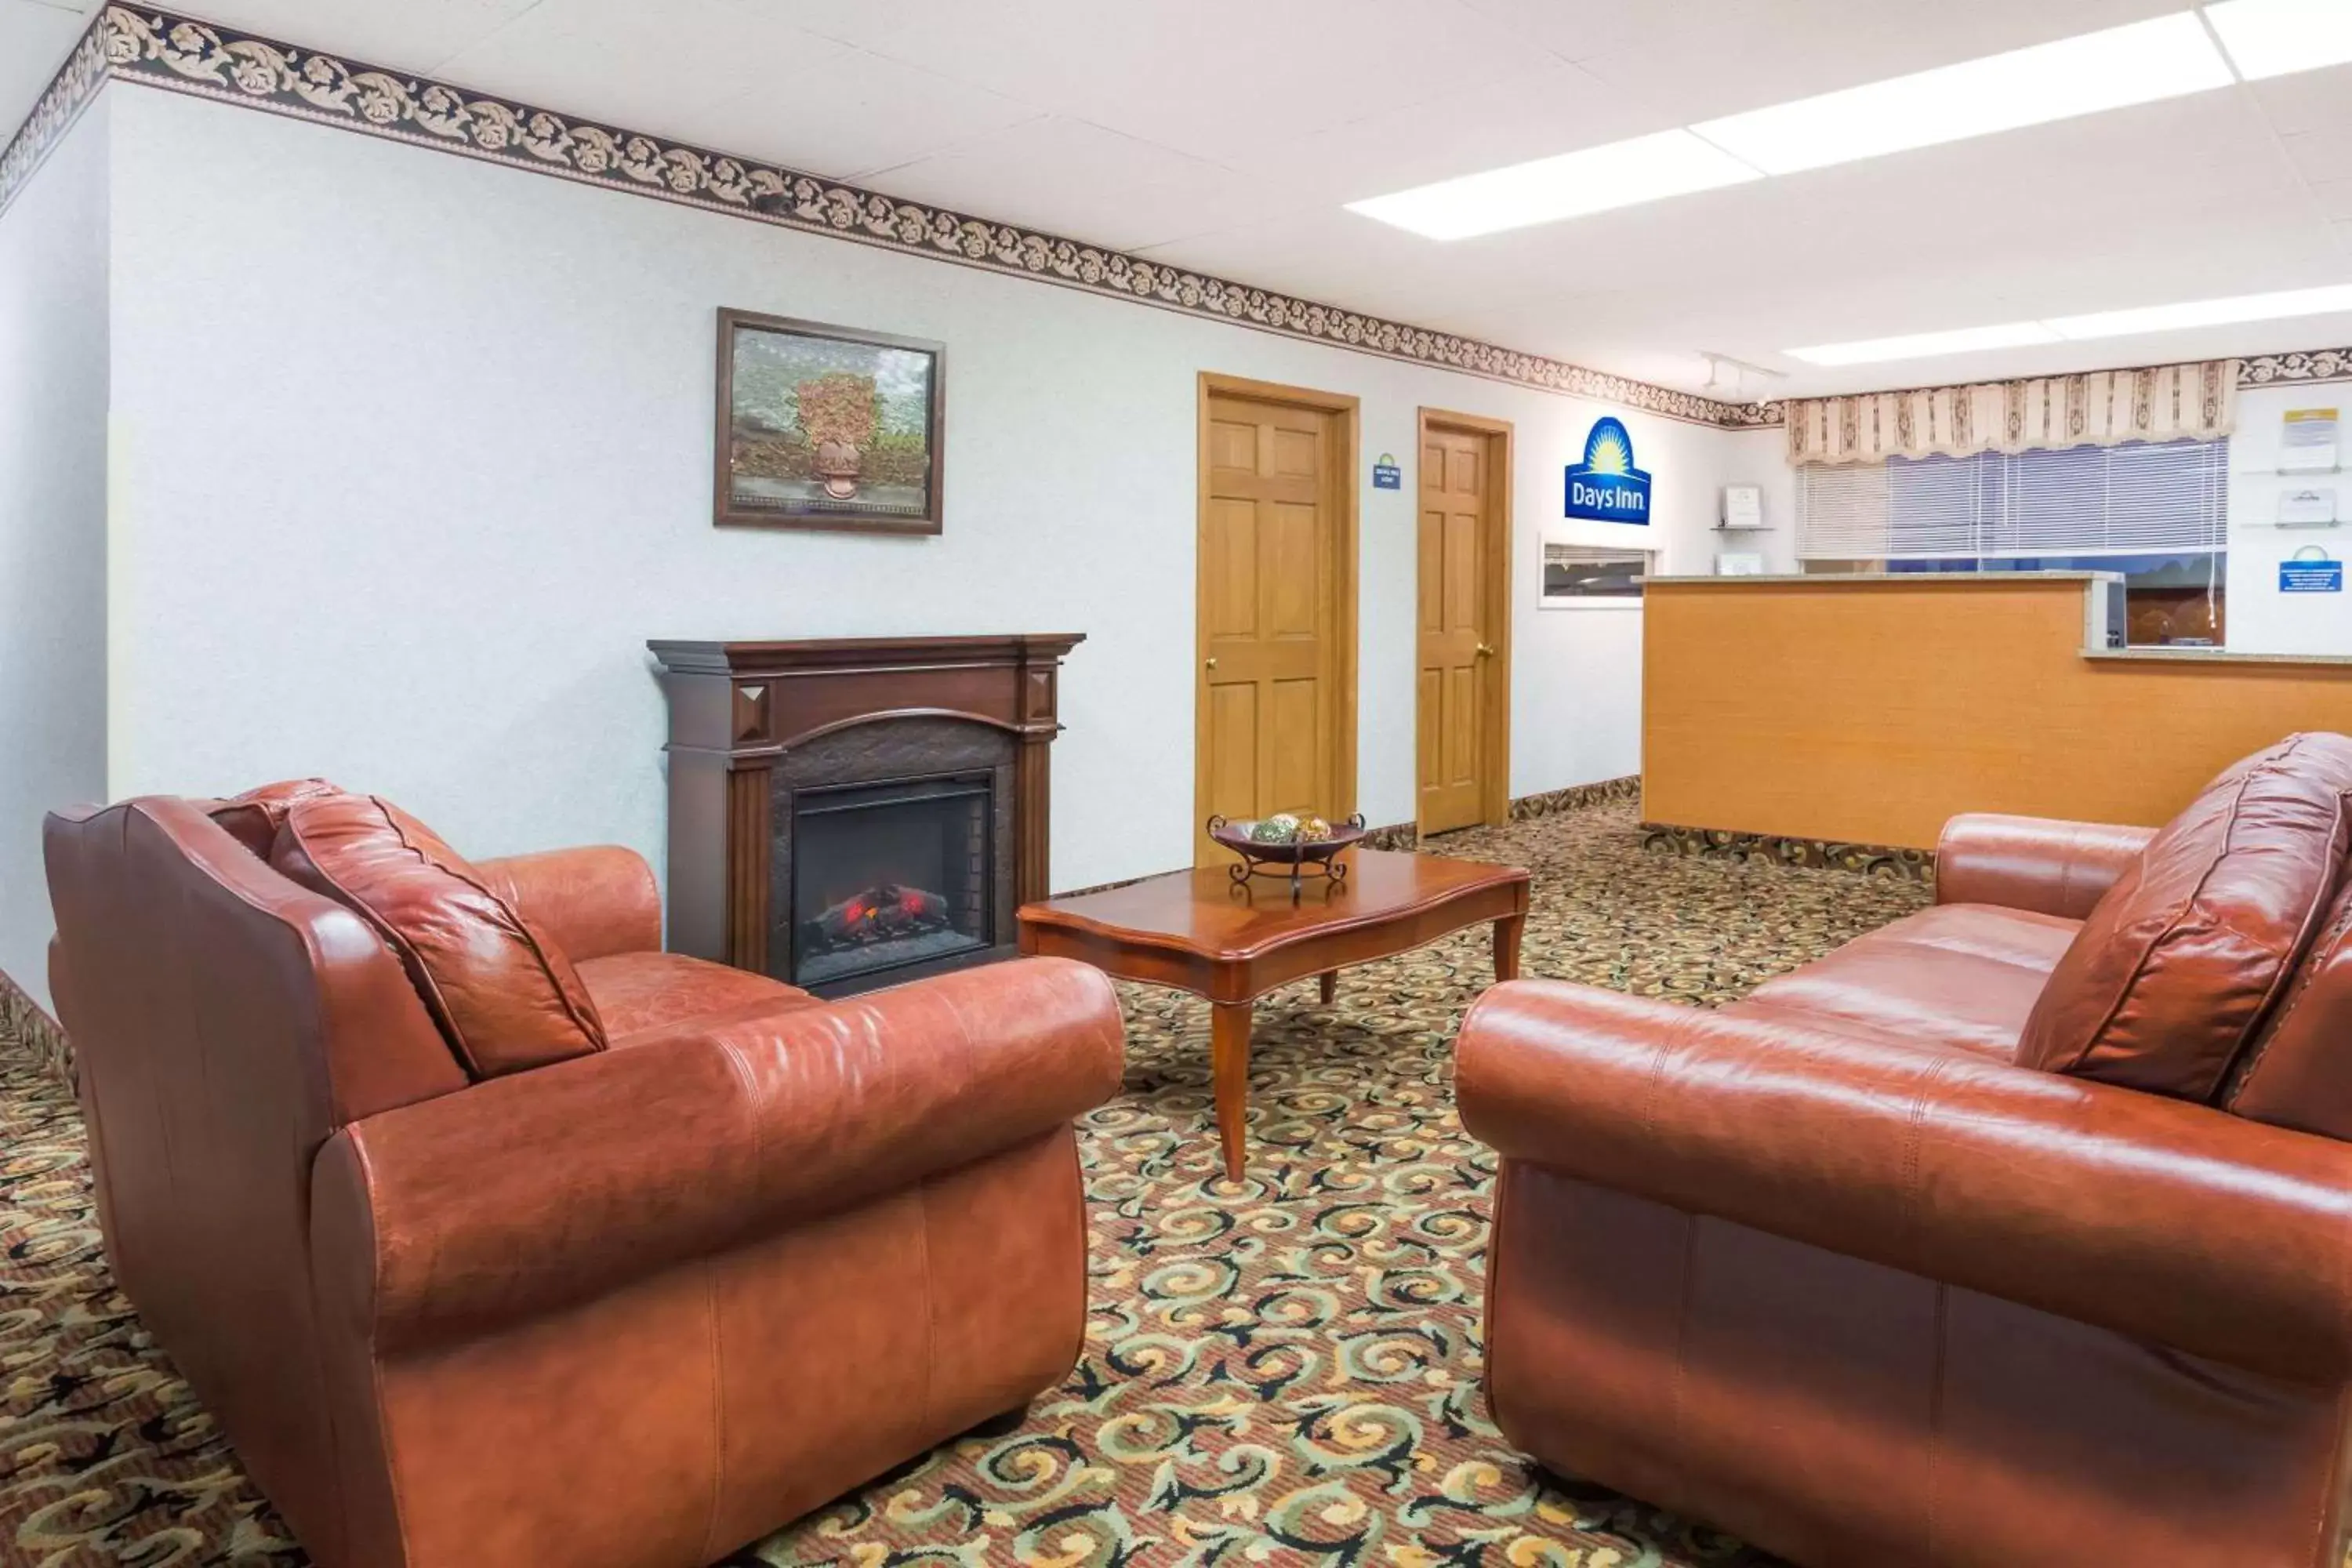 Lobby or reception, Seating Area in Days Inn by Wyndham Staunton